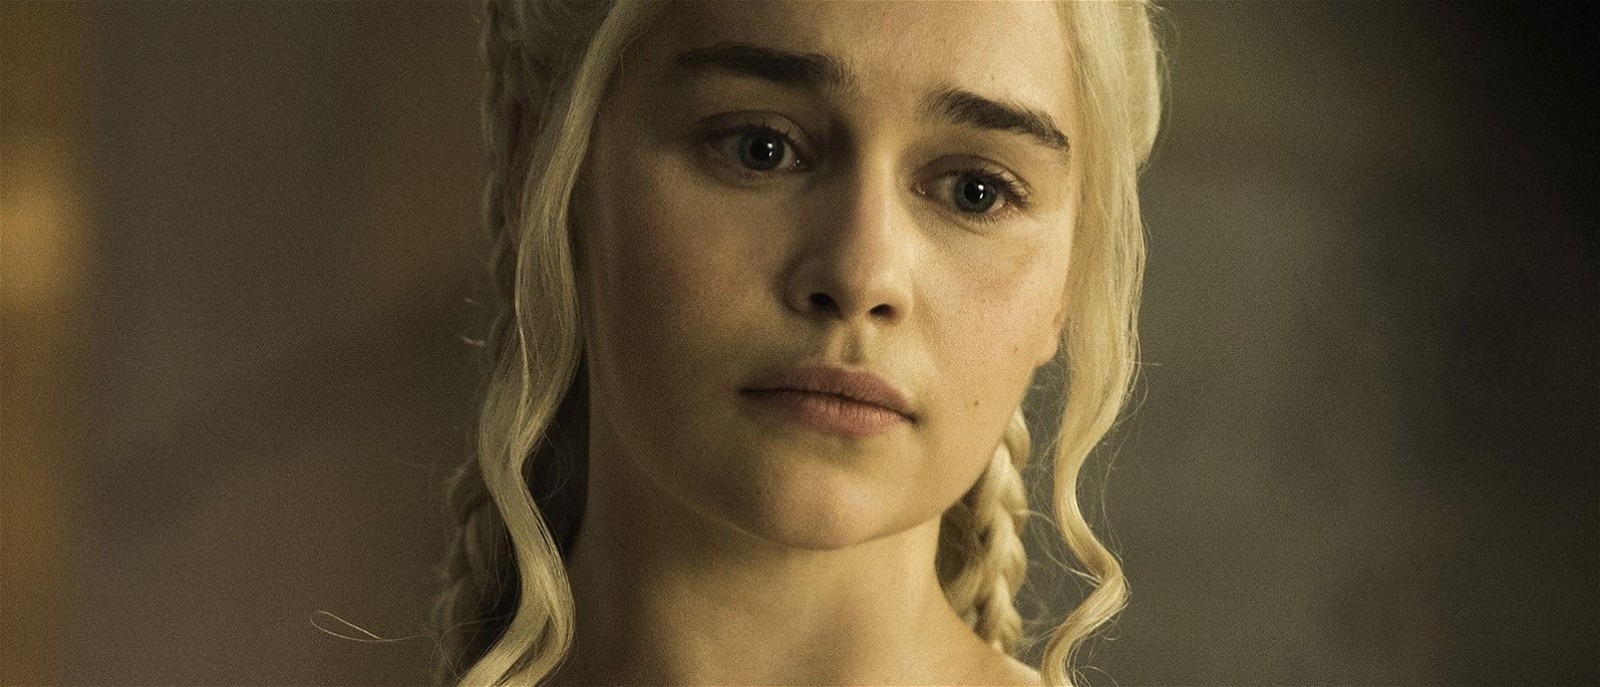 Emilia Clarke in Game of Thrones (2011-19)